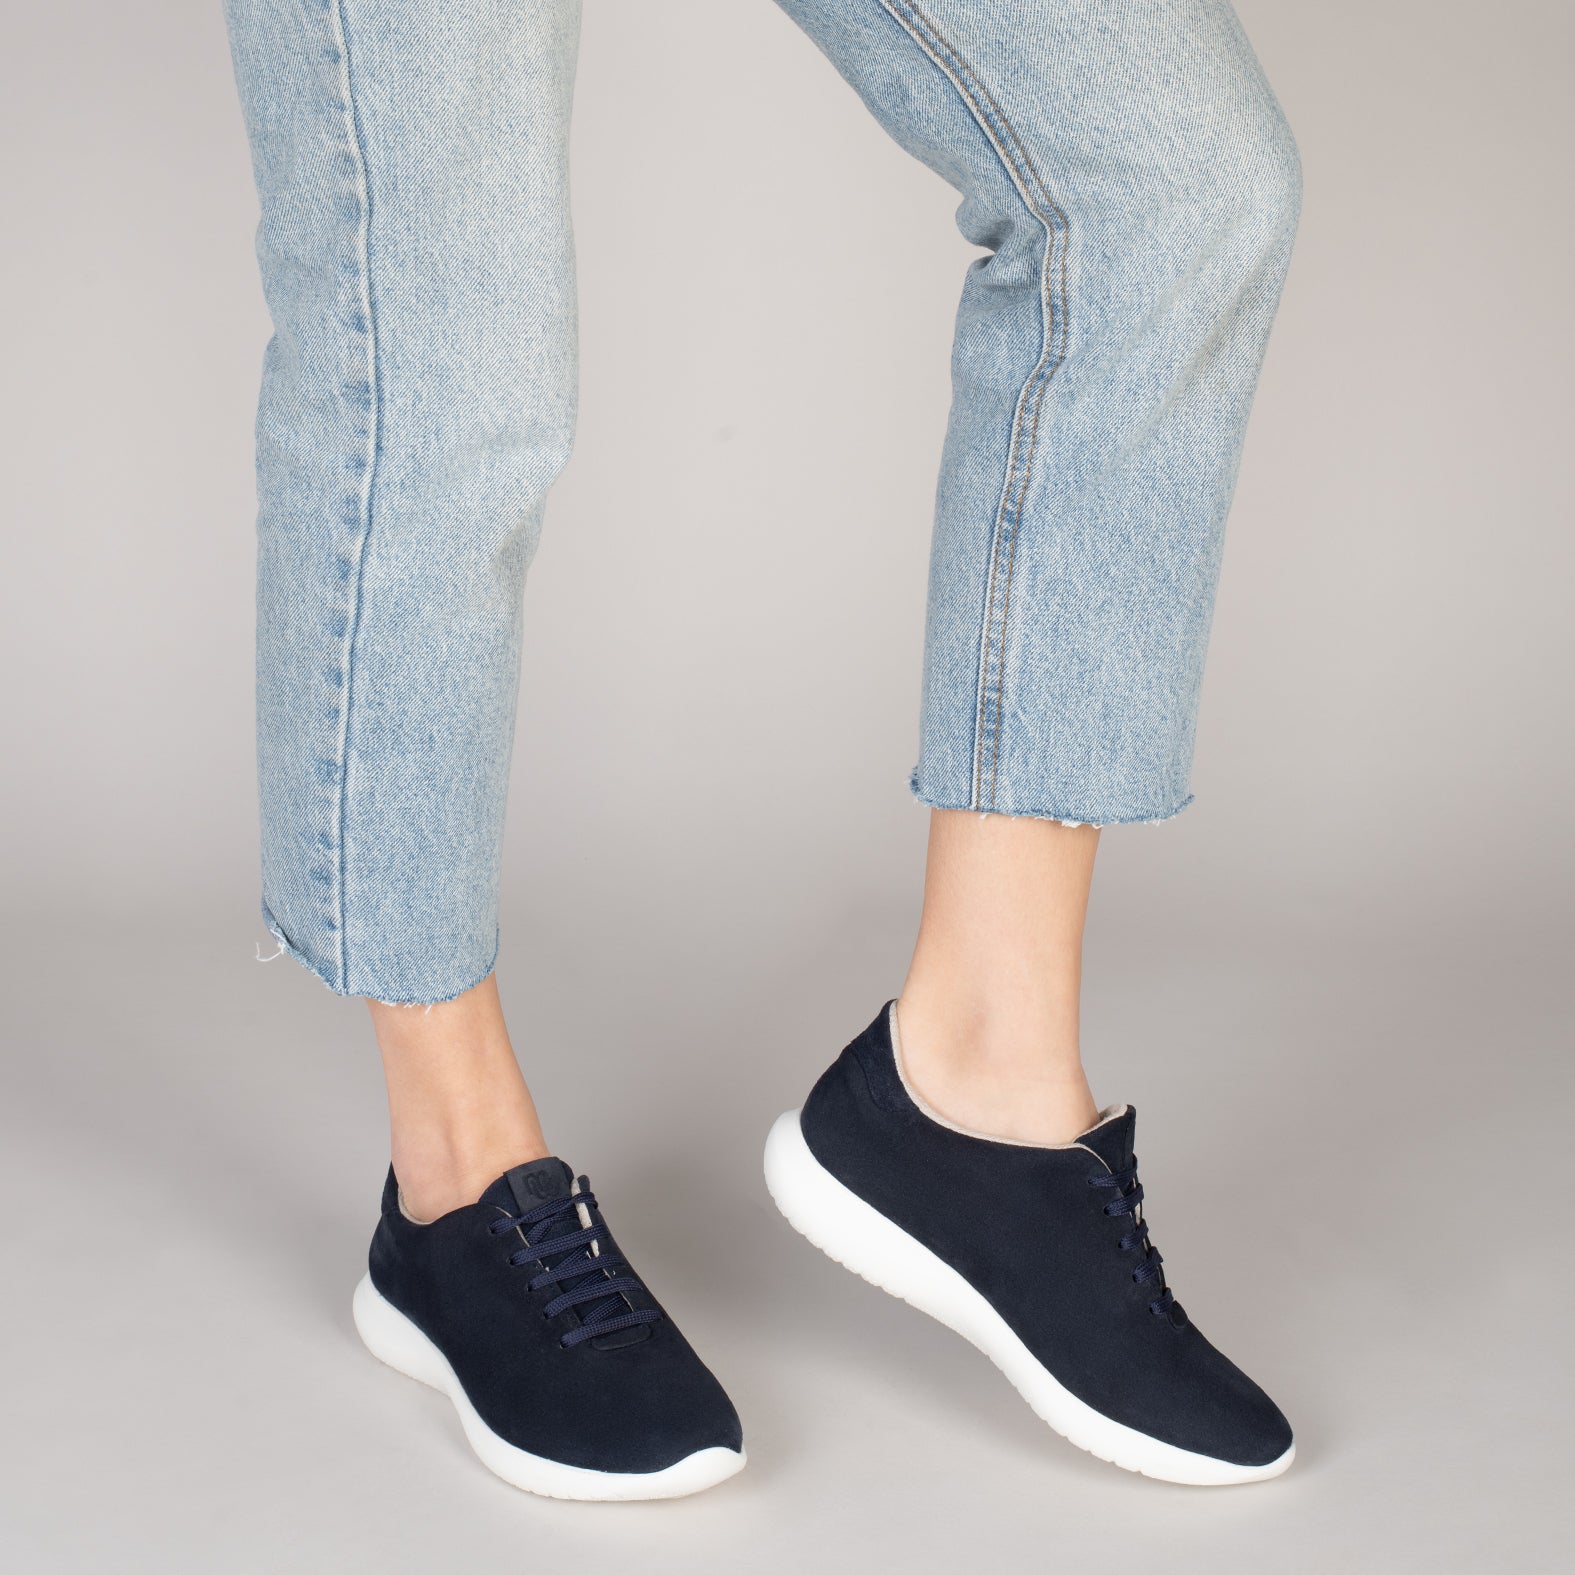 WALK – NAVY comfortable women sneakers